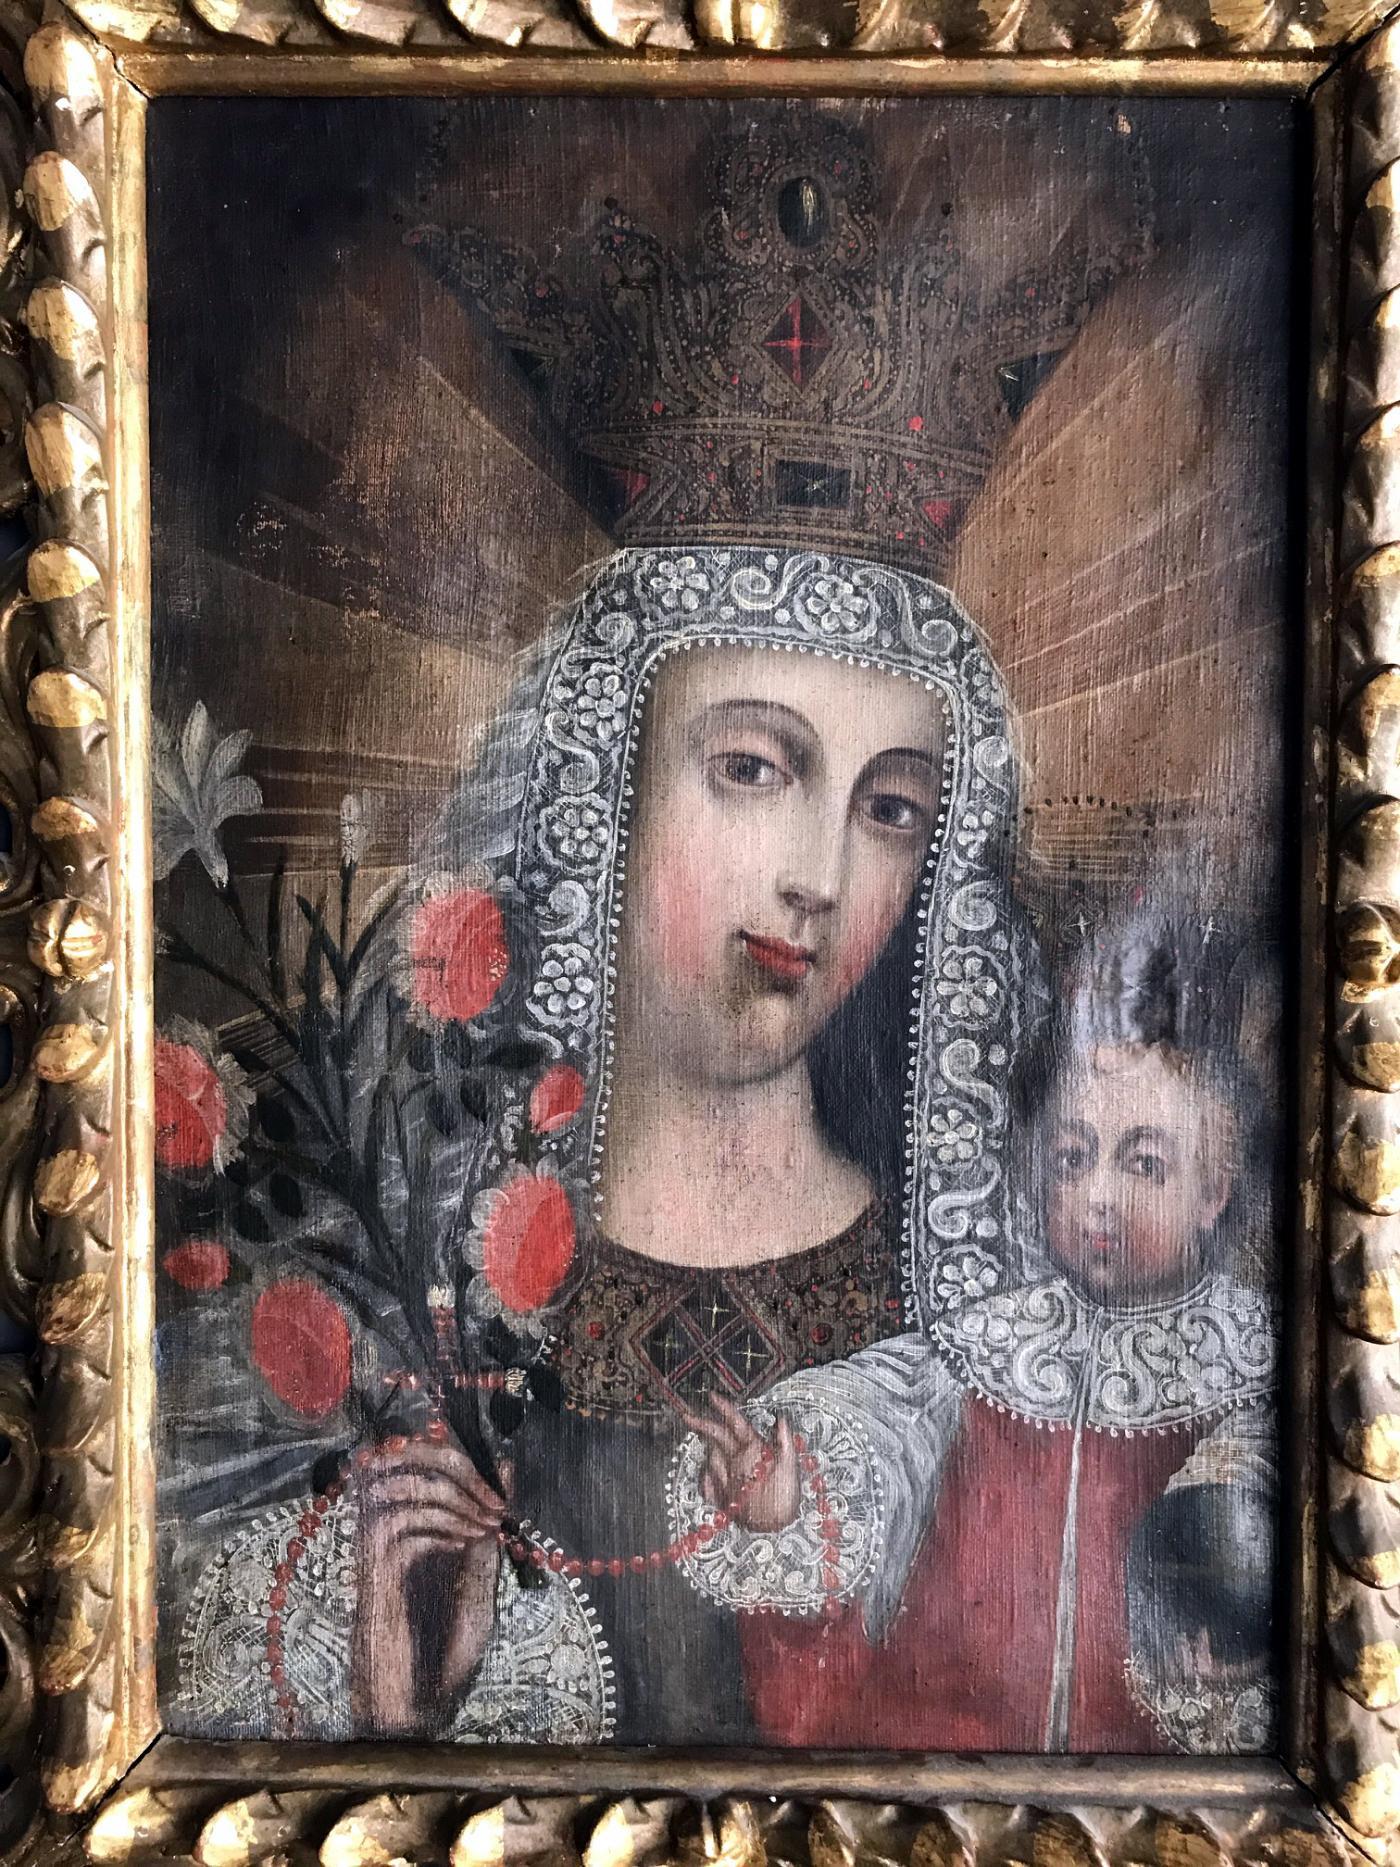 Une belle peinture ancienne à l'huile sur lin de la période coloniale espagnole fin 18ème-début 19ème siècle. Dans le style de l'école classique de Cuzco, la peinture représente la Madone et l'Enfant Jésus et a été fortement embellie par des